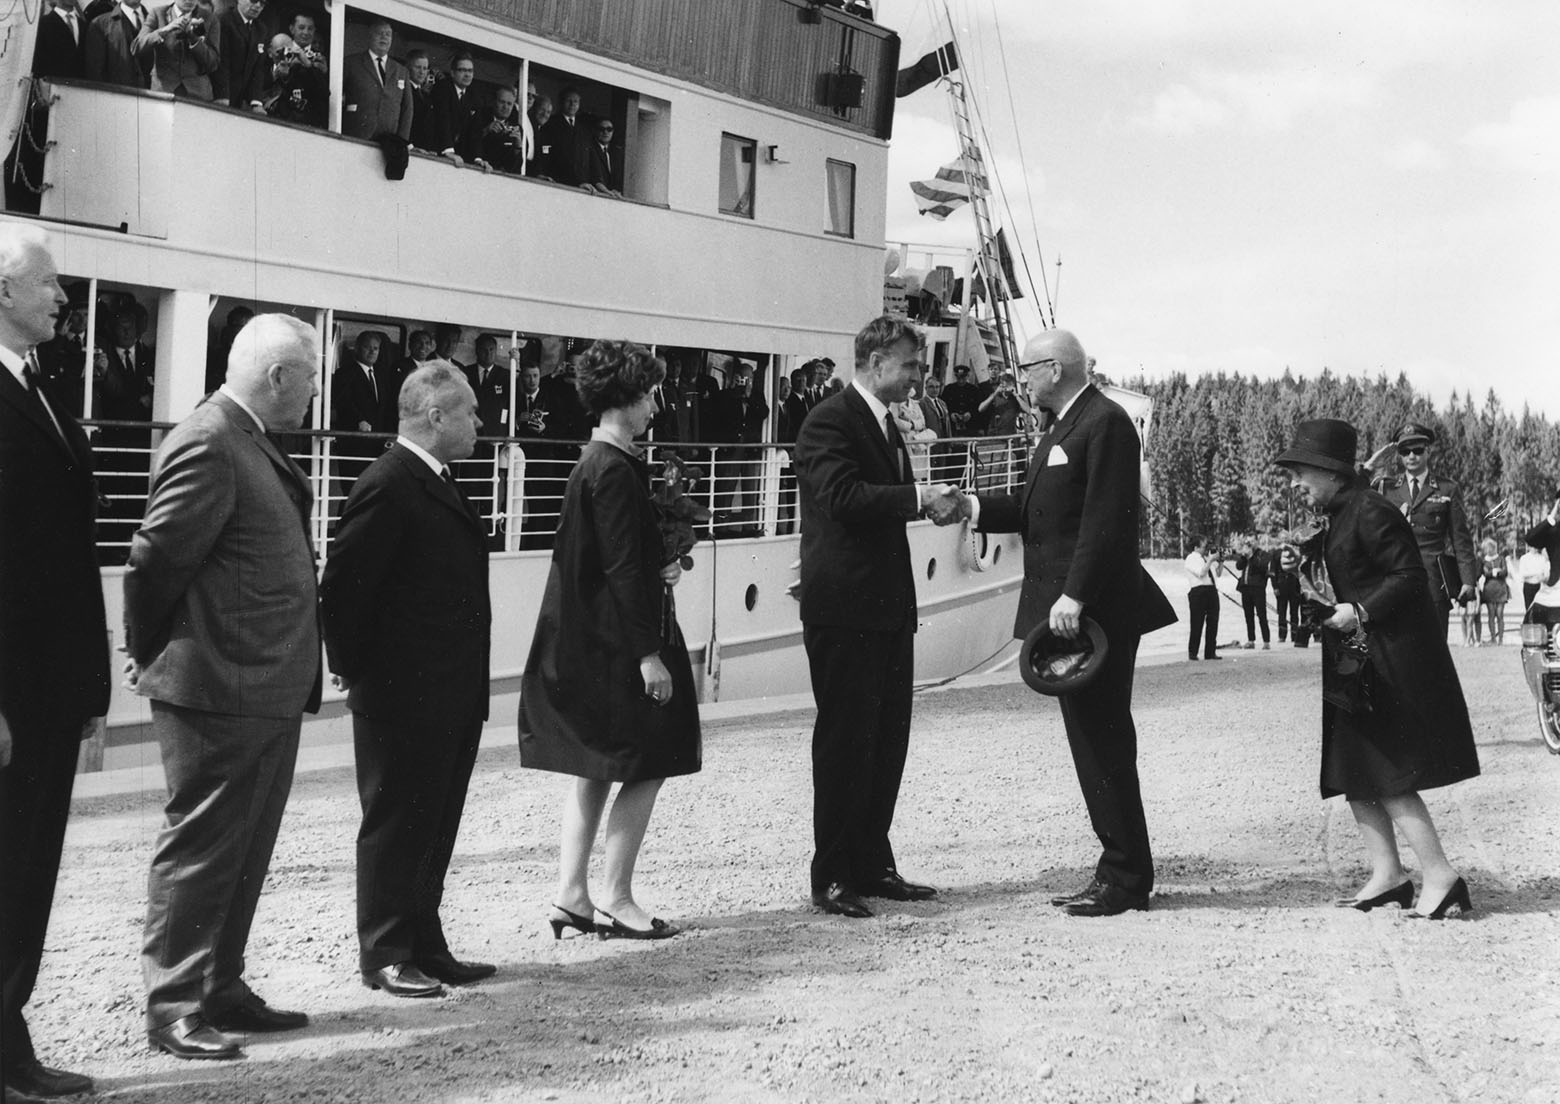 Jutun kuvituskuva. Kuvassa presidentti Urho Kekkonen on saapunut Nuijamaan laituriin noustakseen vihkiäislaiva S/S Kastelholmin kyytiin.